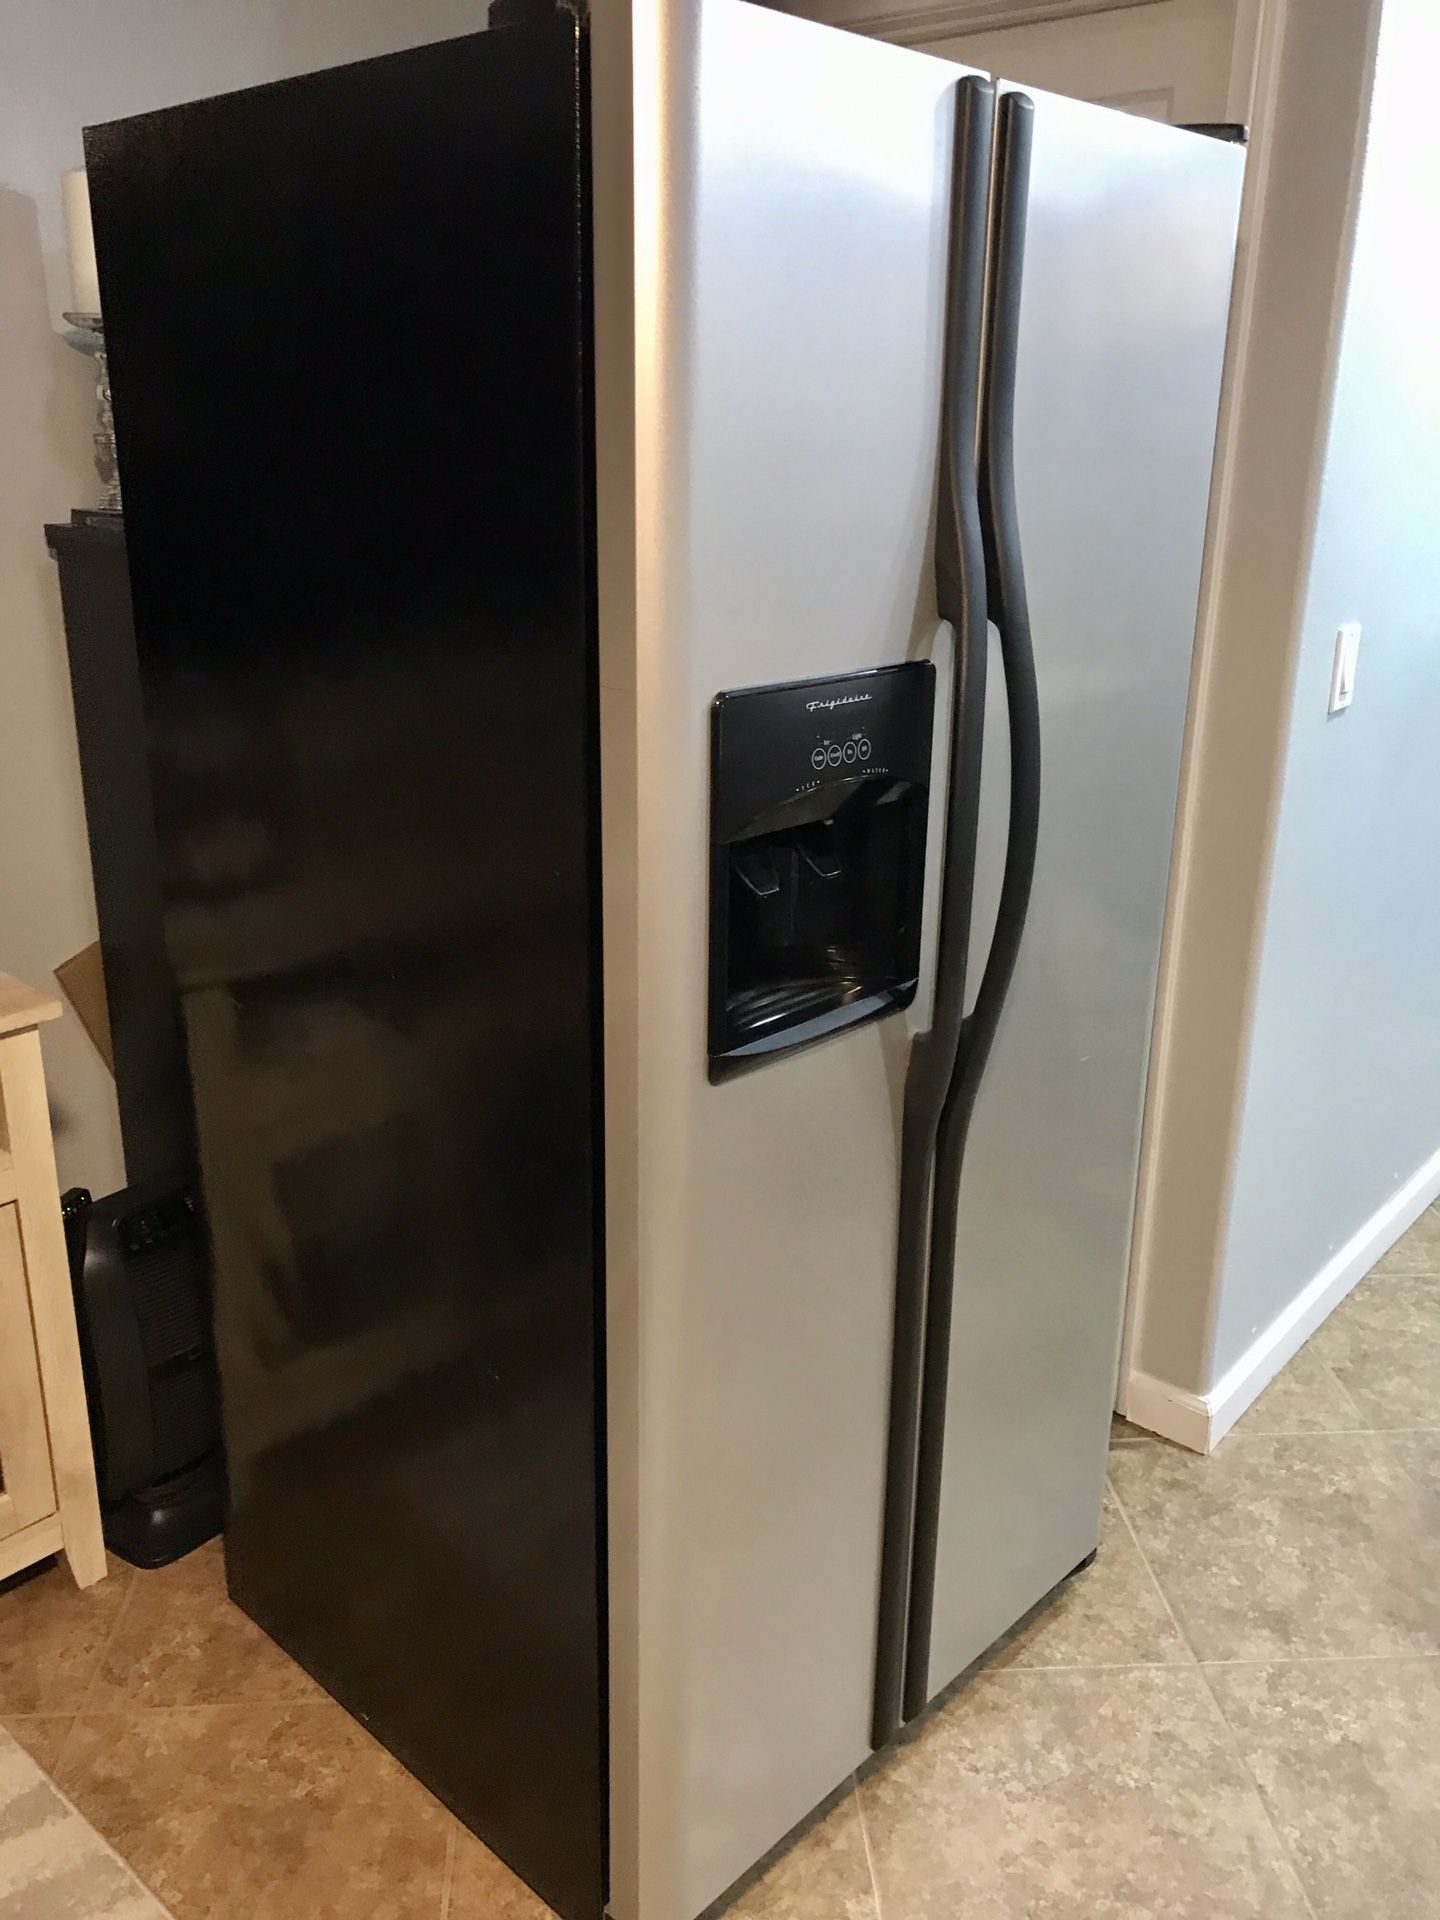 Excellent Working Condition Frigidaire Refrigerator/Freezer